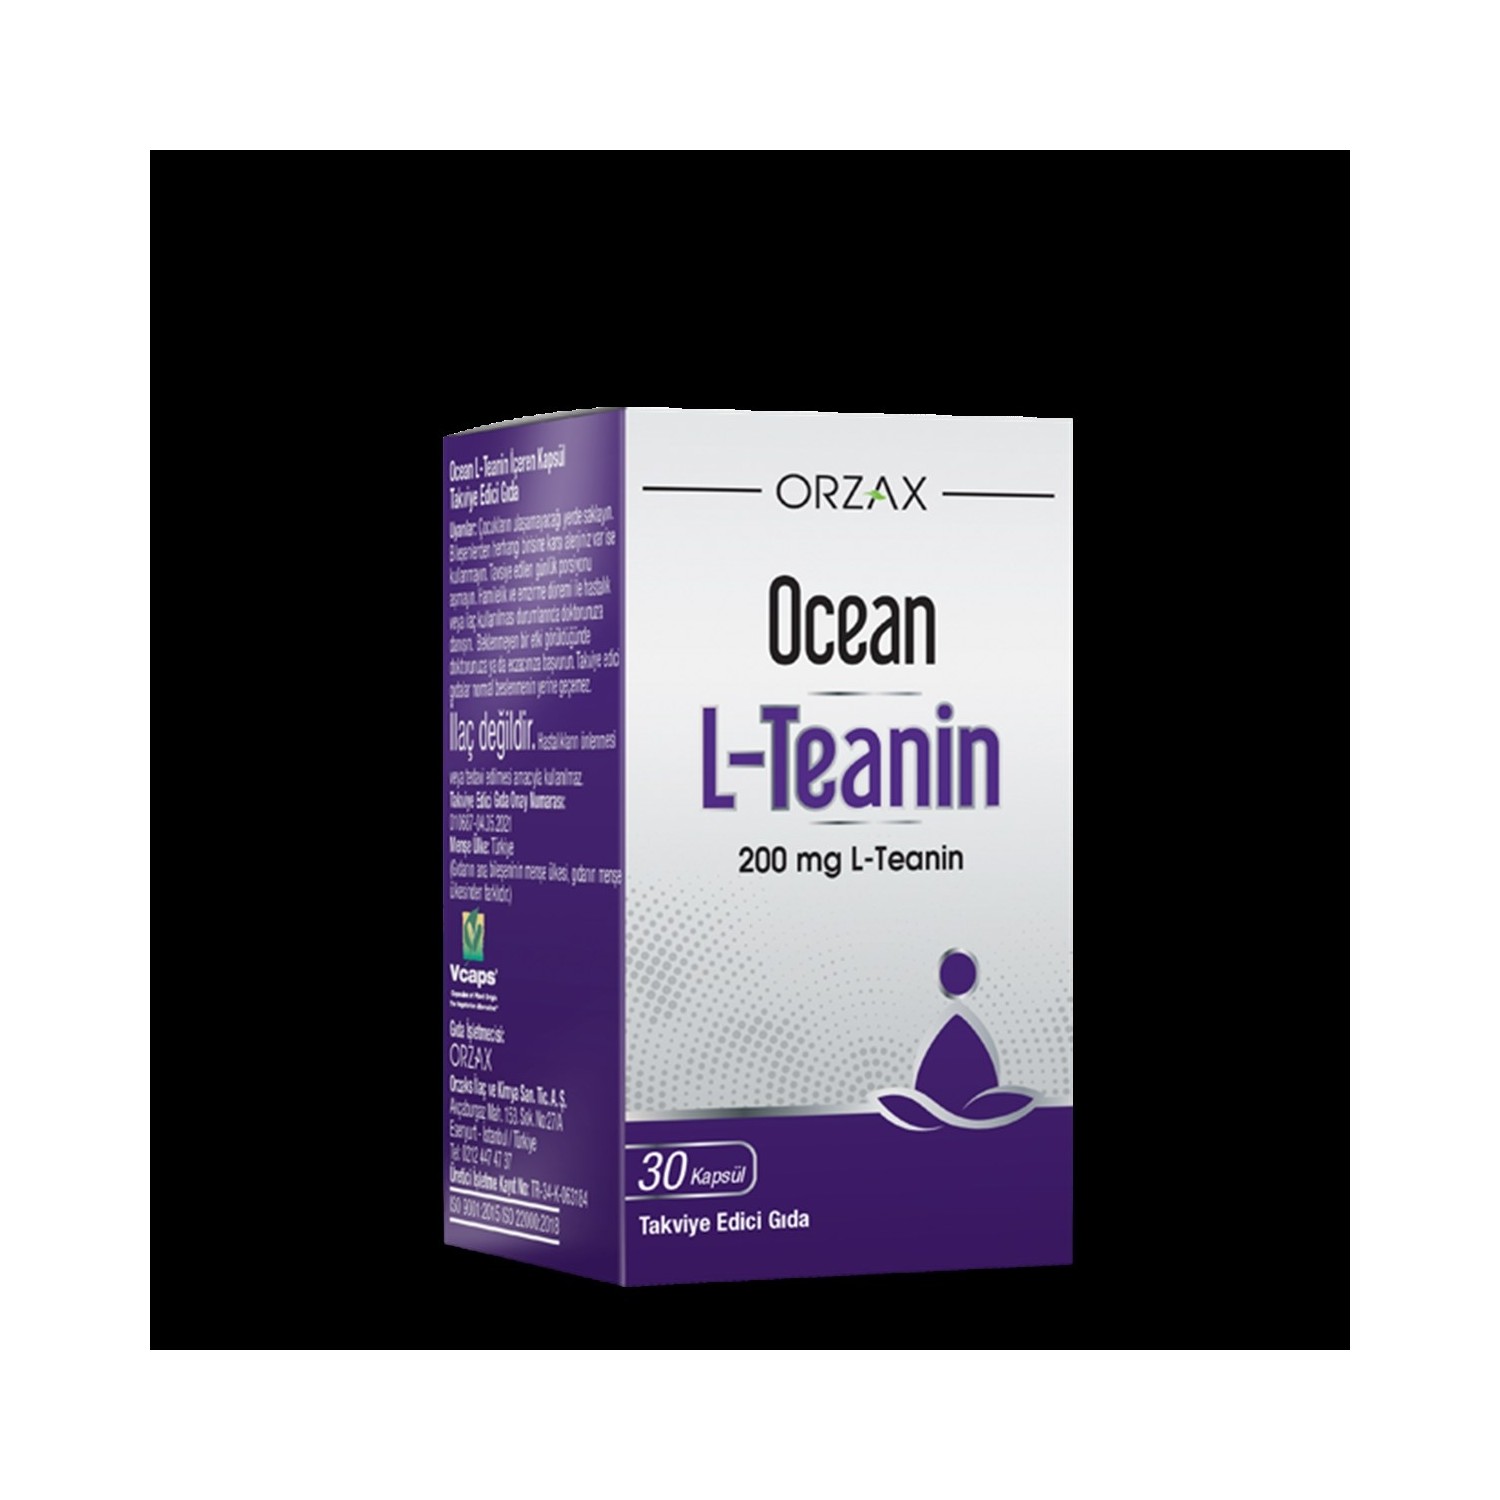 solgar l теанин в свободной форме 150 мг 60 растительных капсул Пищевая добавка Ocean L-Theanine 200 мг, 30 капсул